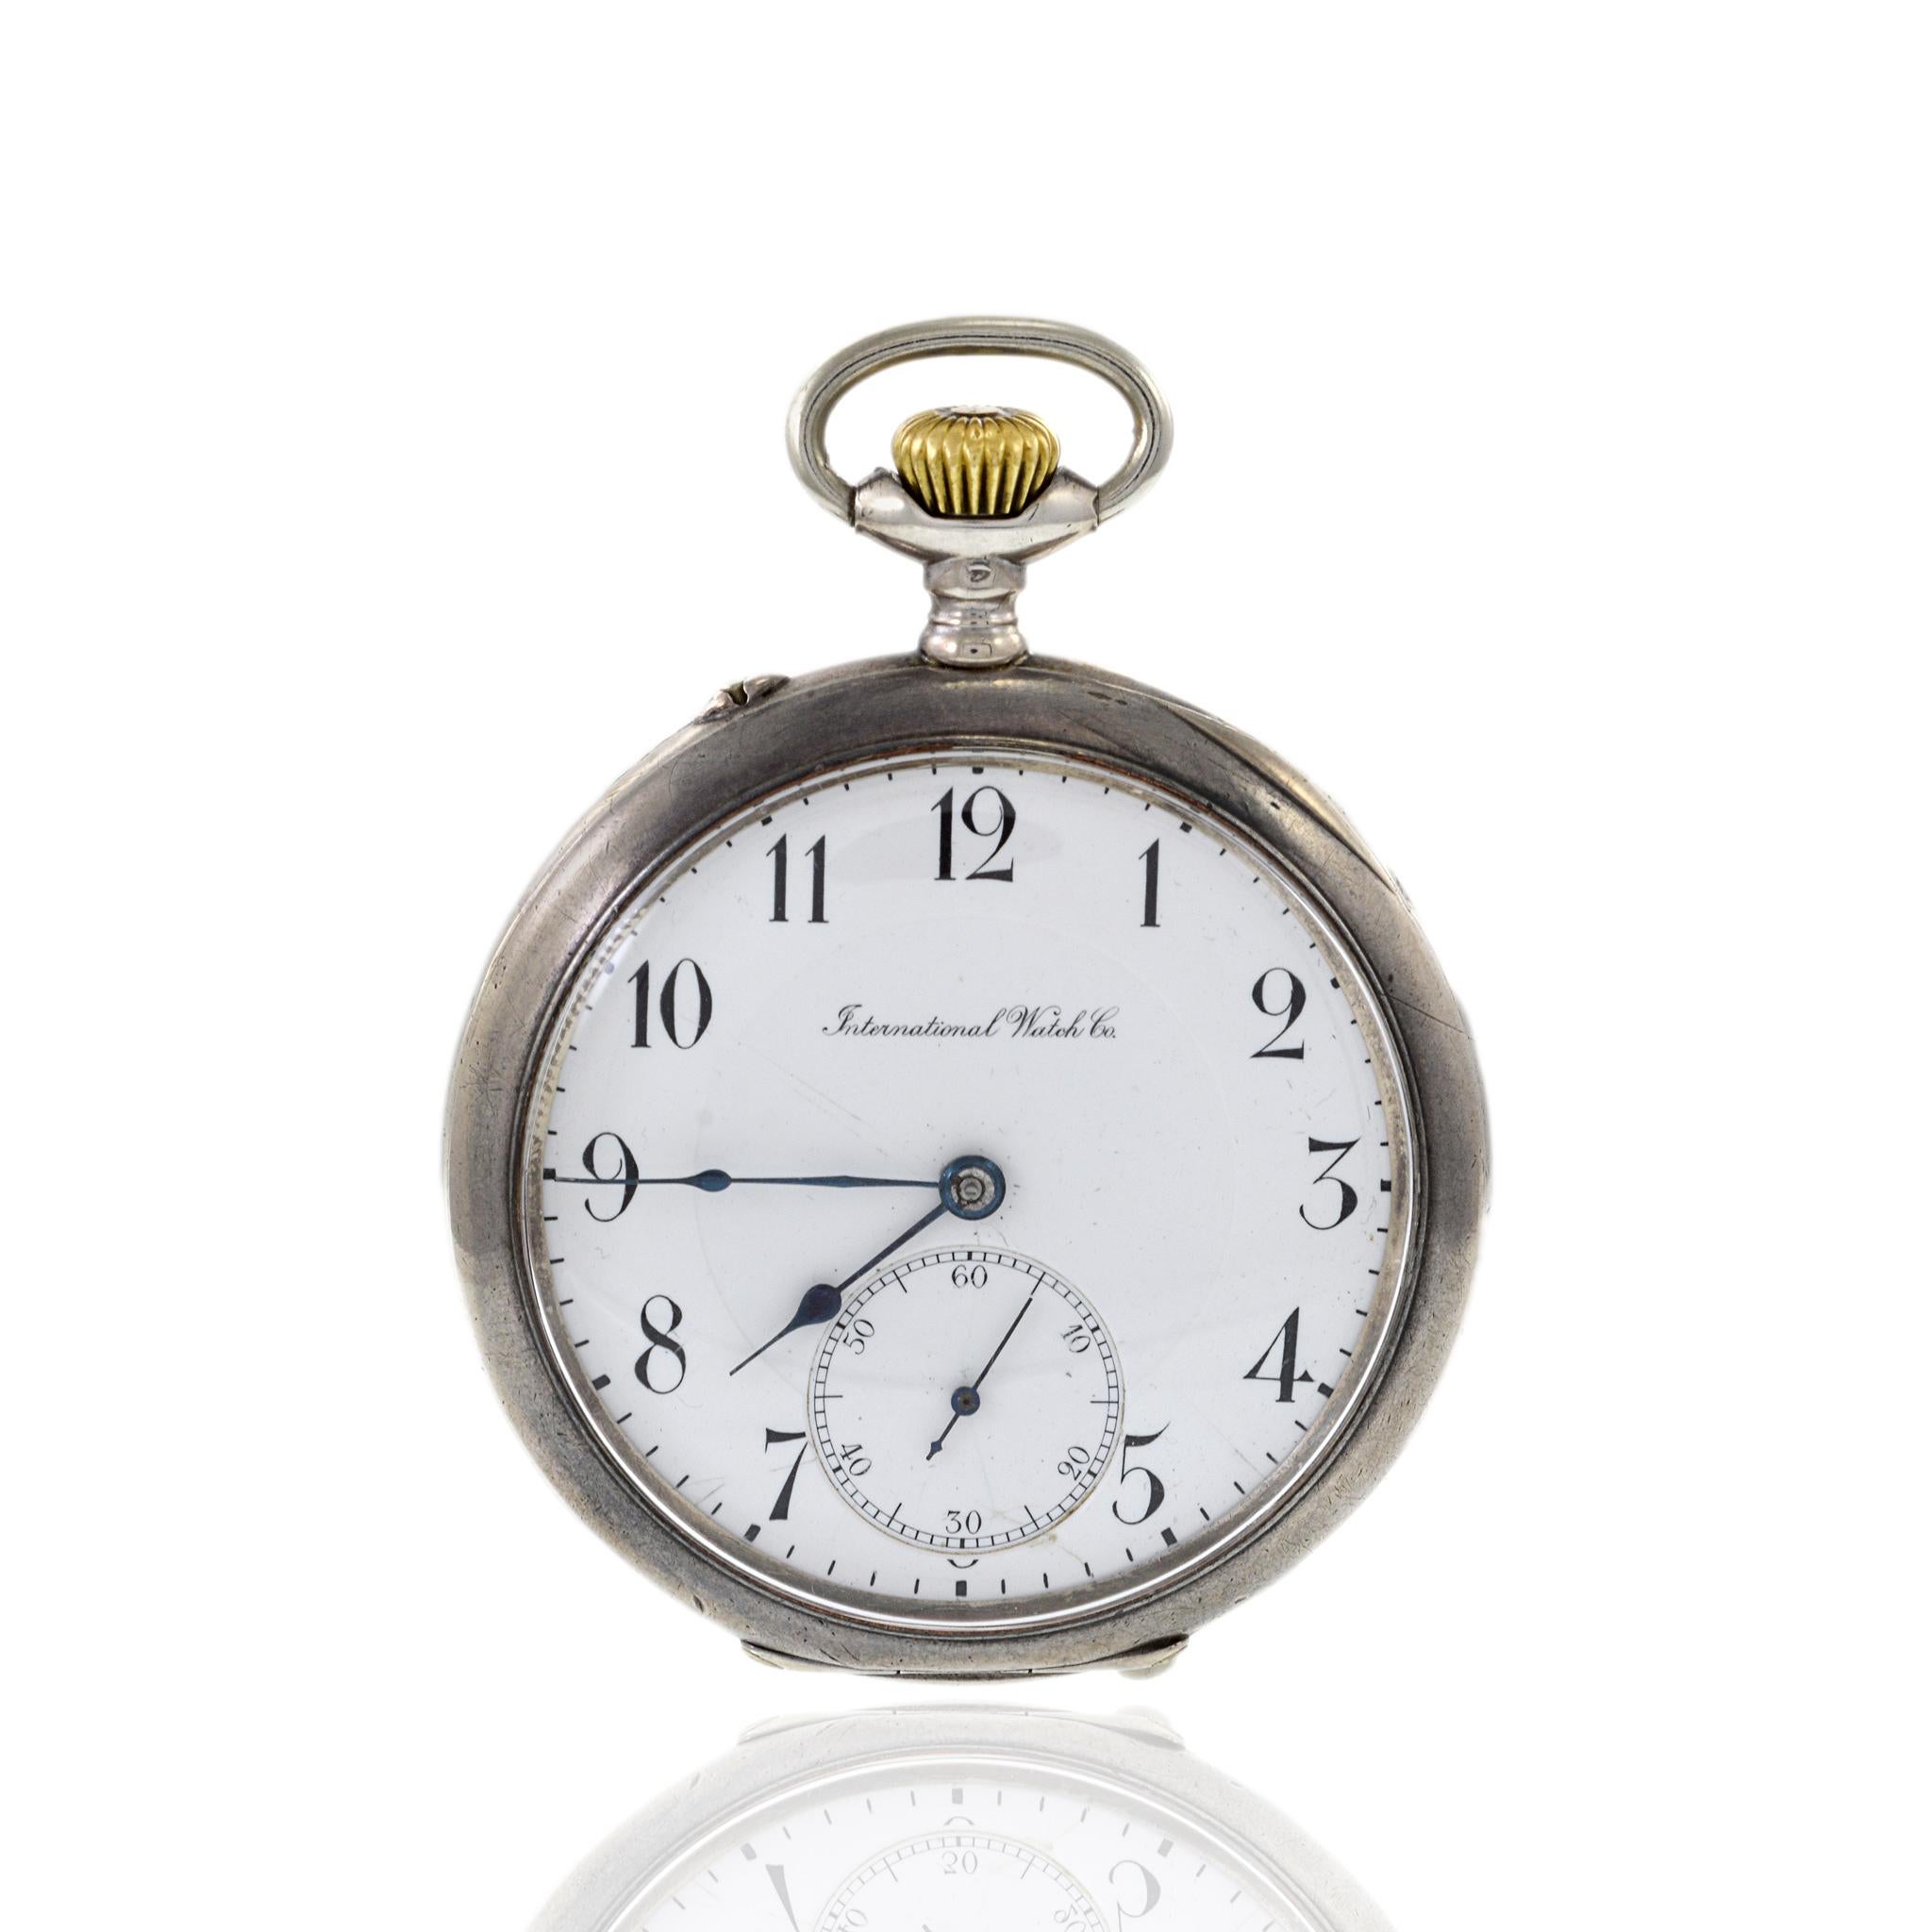 Die IWC-Taschenuhr aus dem Jahr 1915 ist ein exquisites Stück Uhrmachergeschichte. Dieser zeitlose Zeitmesser besitzt ein 52 mm großes Gehäuse aus 800er Silber, das die Handwerkskunst und Eleganz des frühen 20. Jahrhunderts widerspiegelt. Diese Uhr